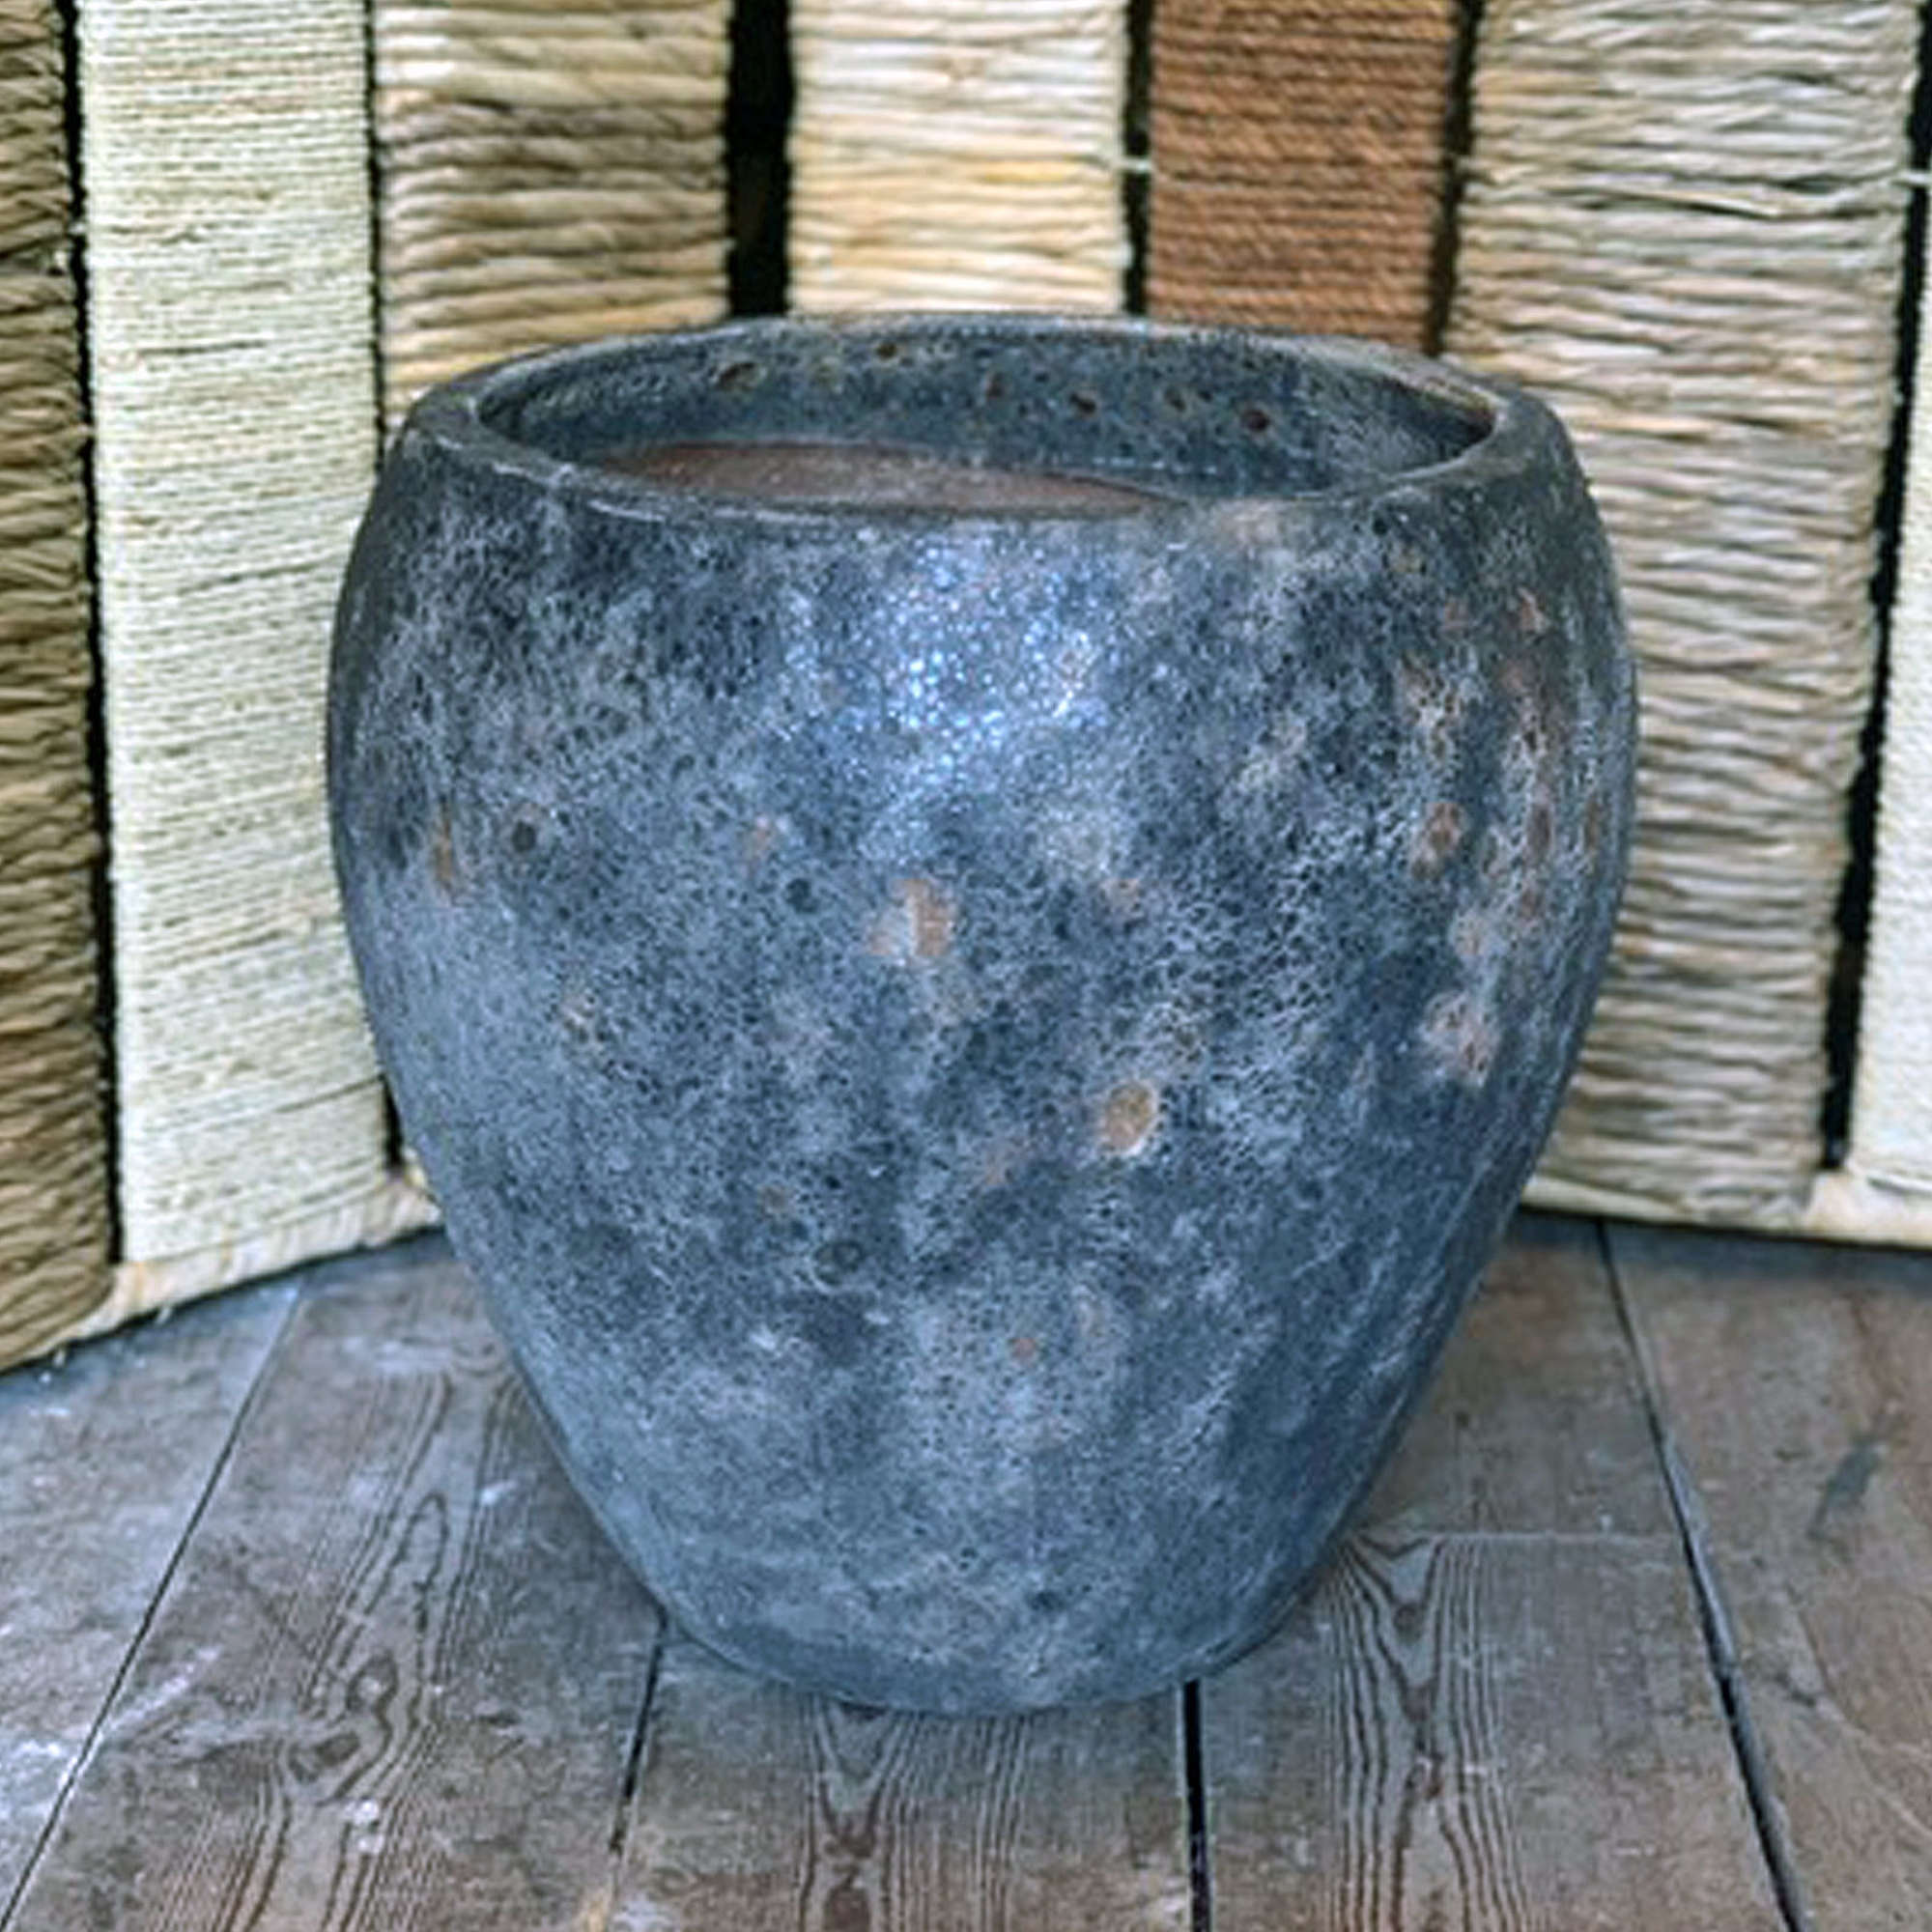 Textured Garden Pot